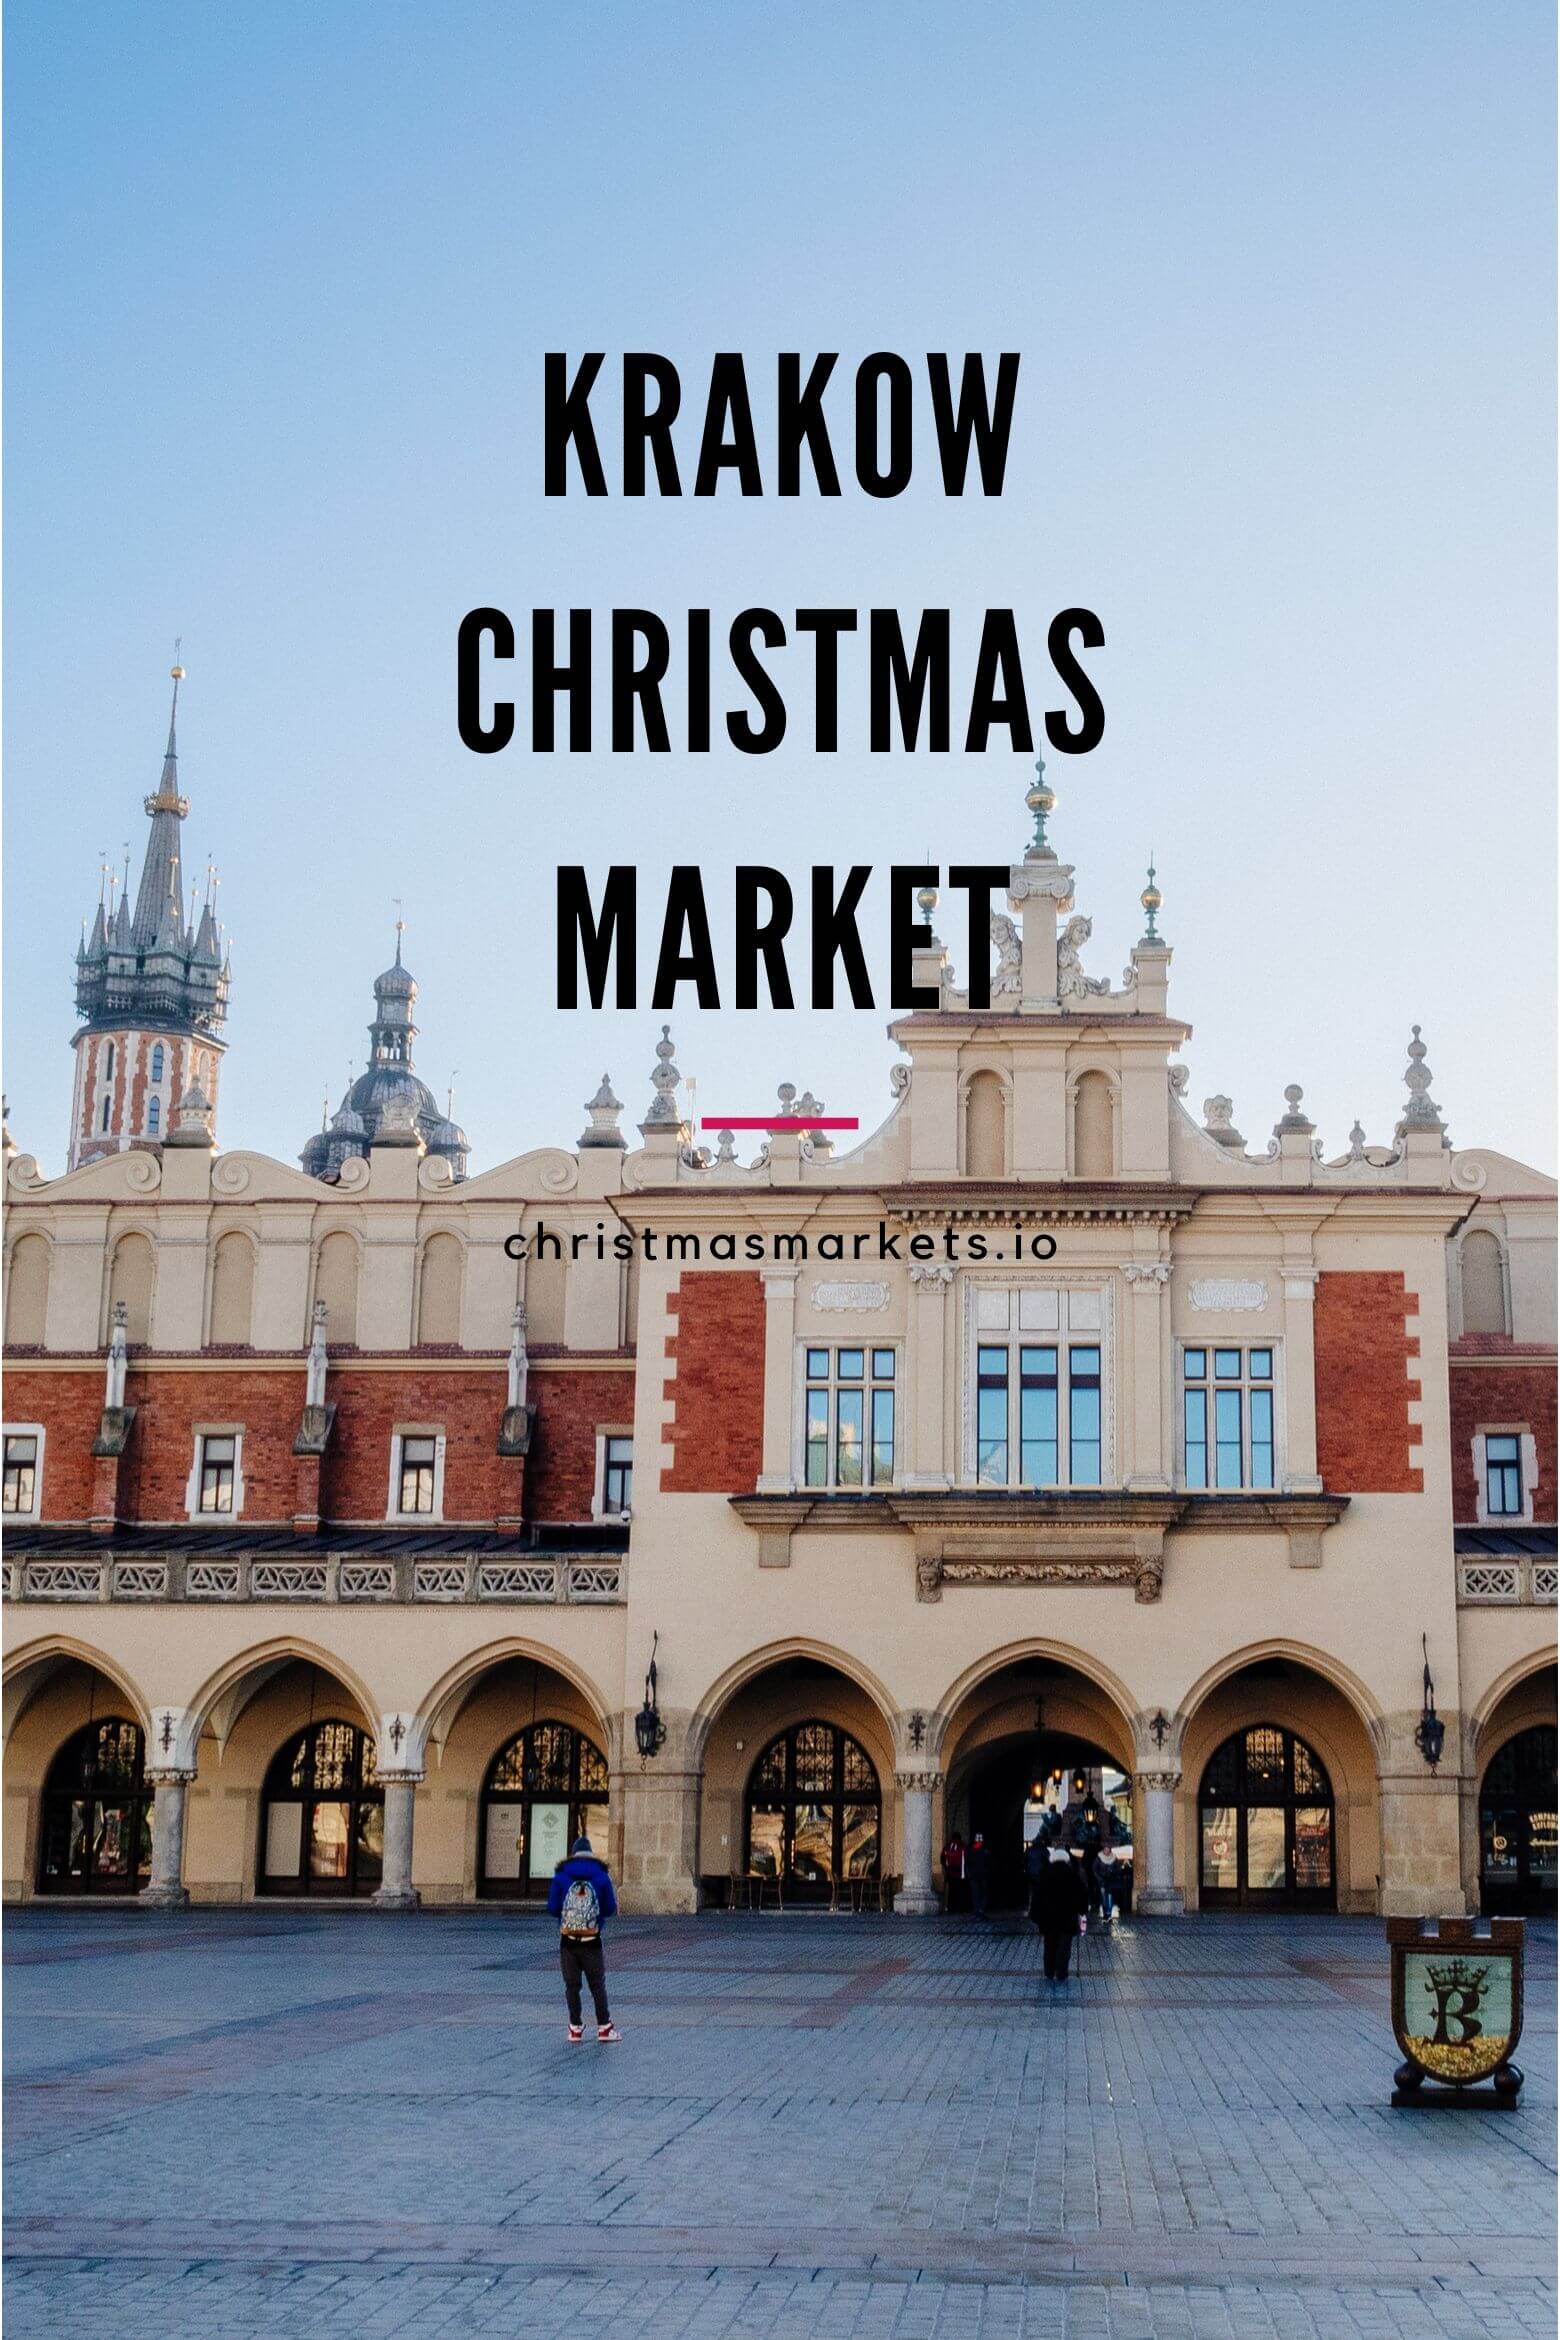 Krakow Christmas Market 2019